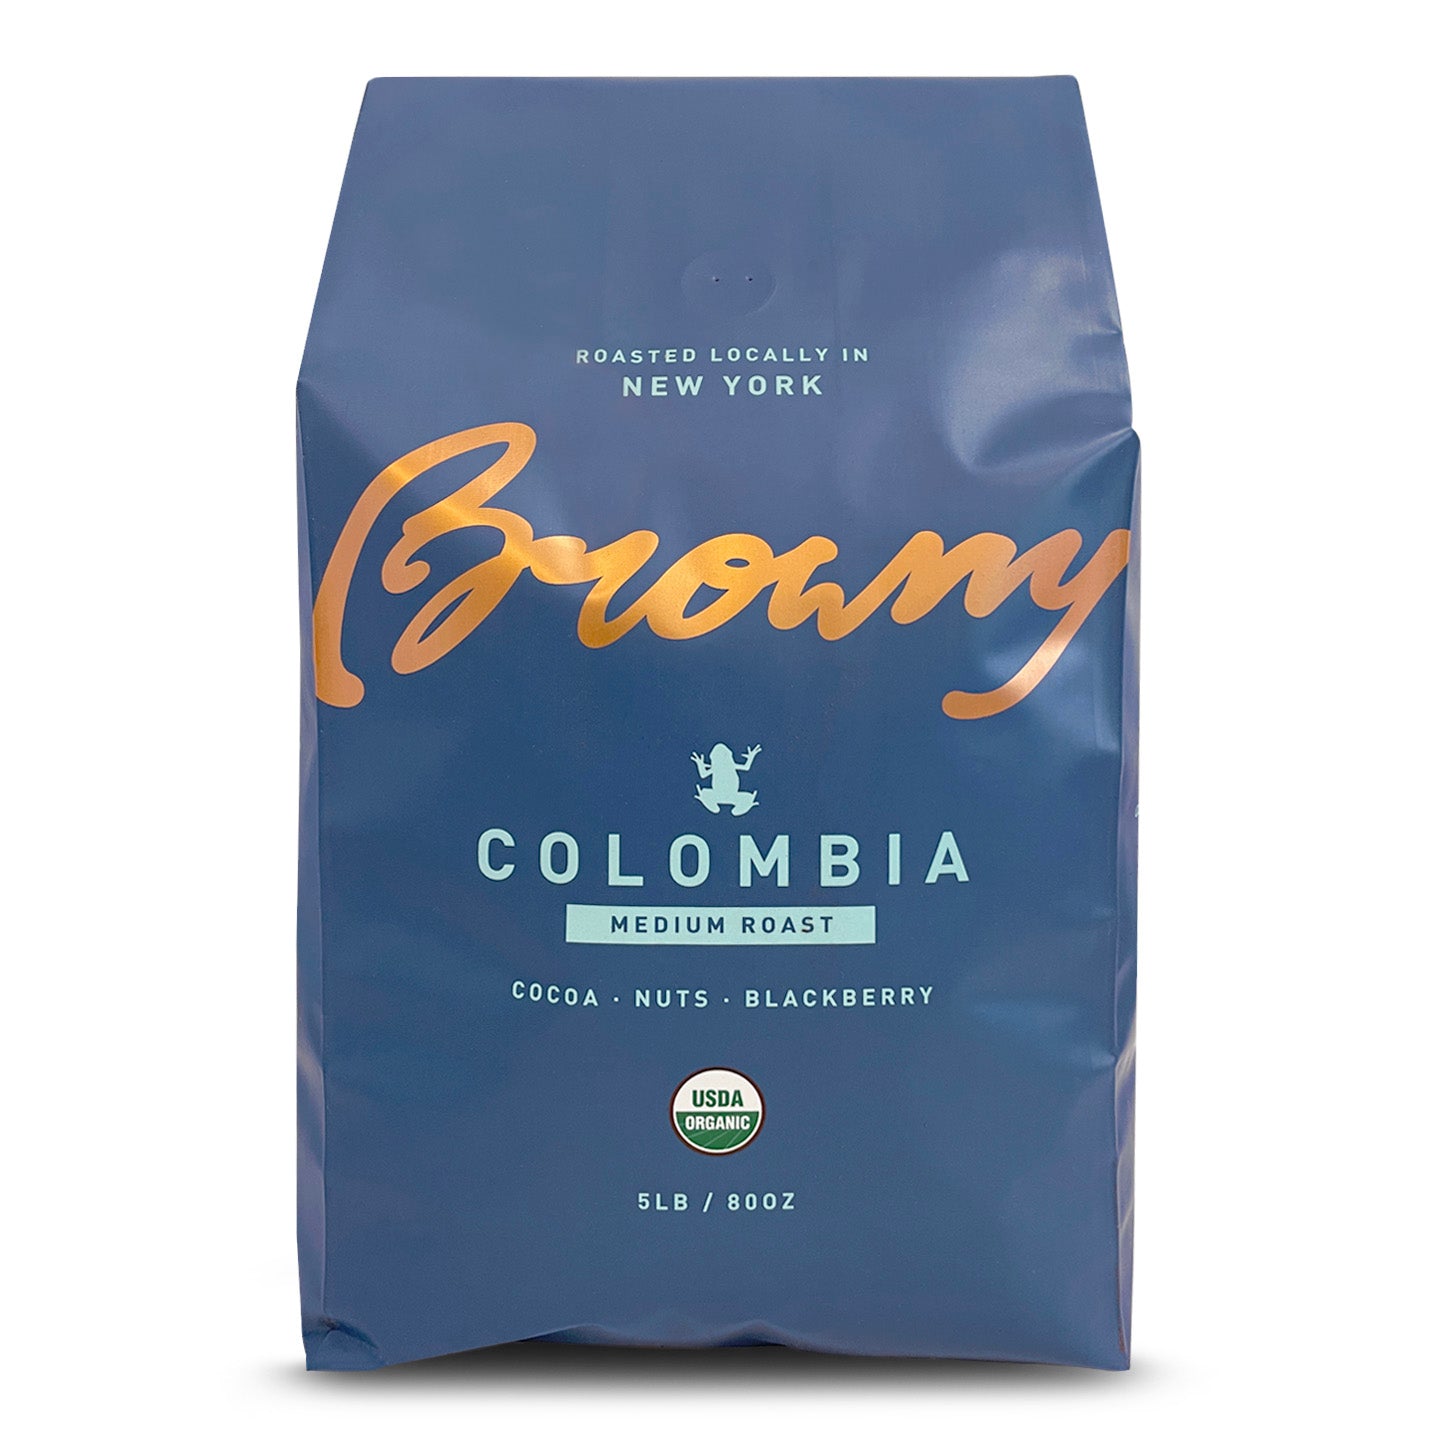 COLOMBIA, Medium Roast